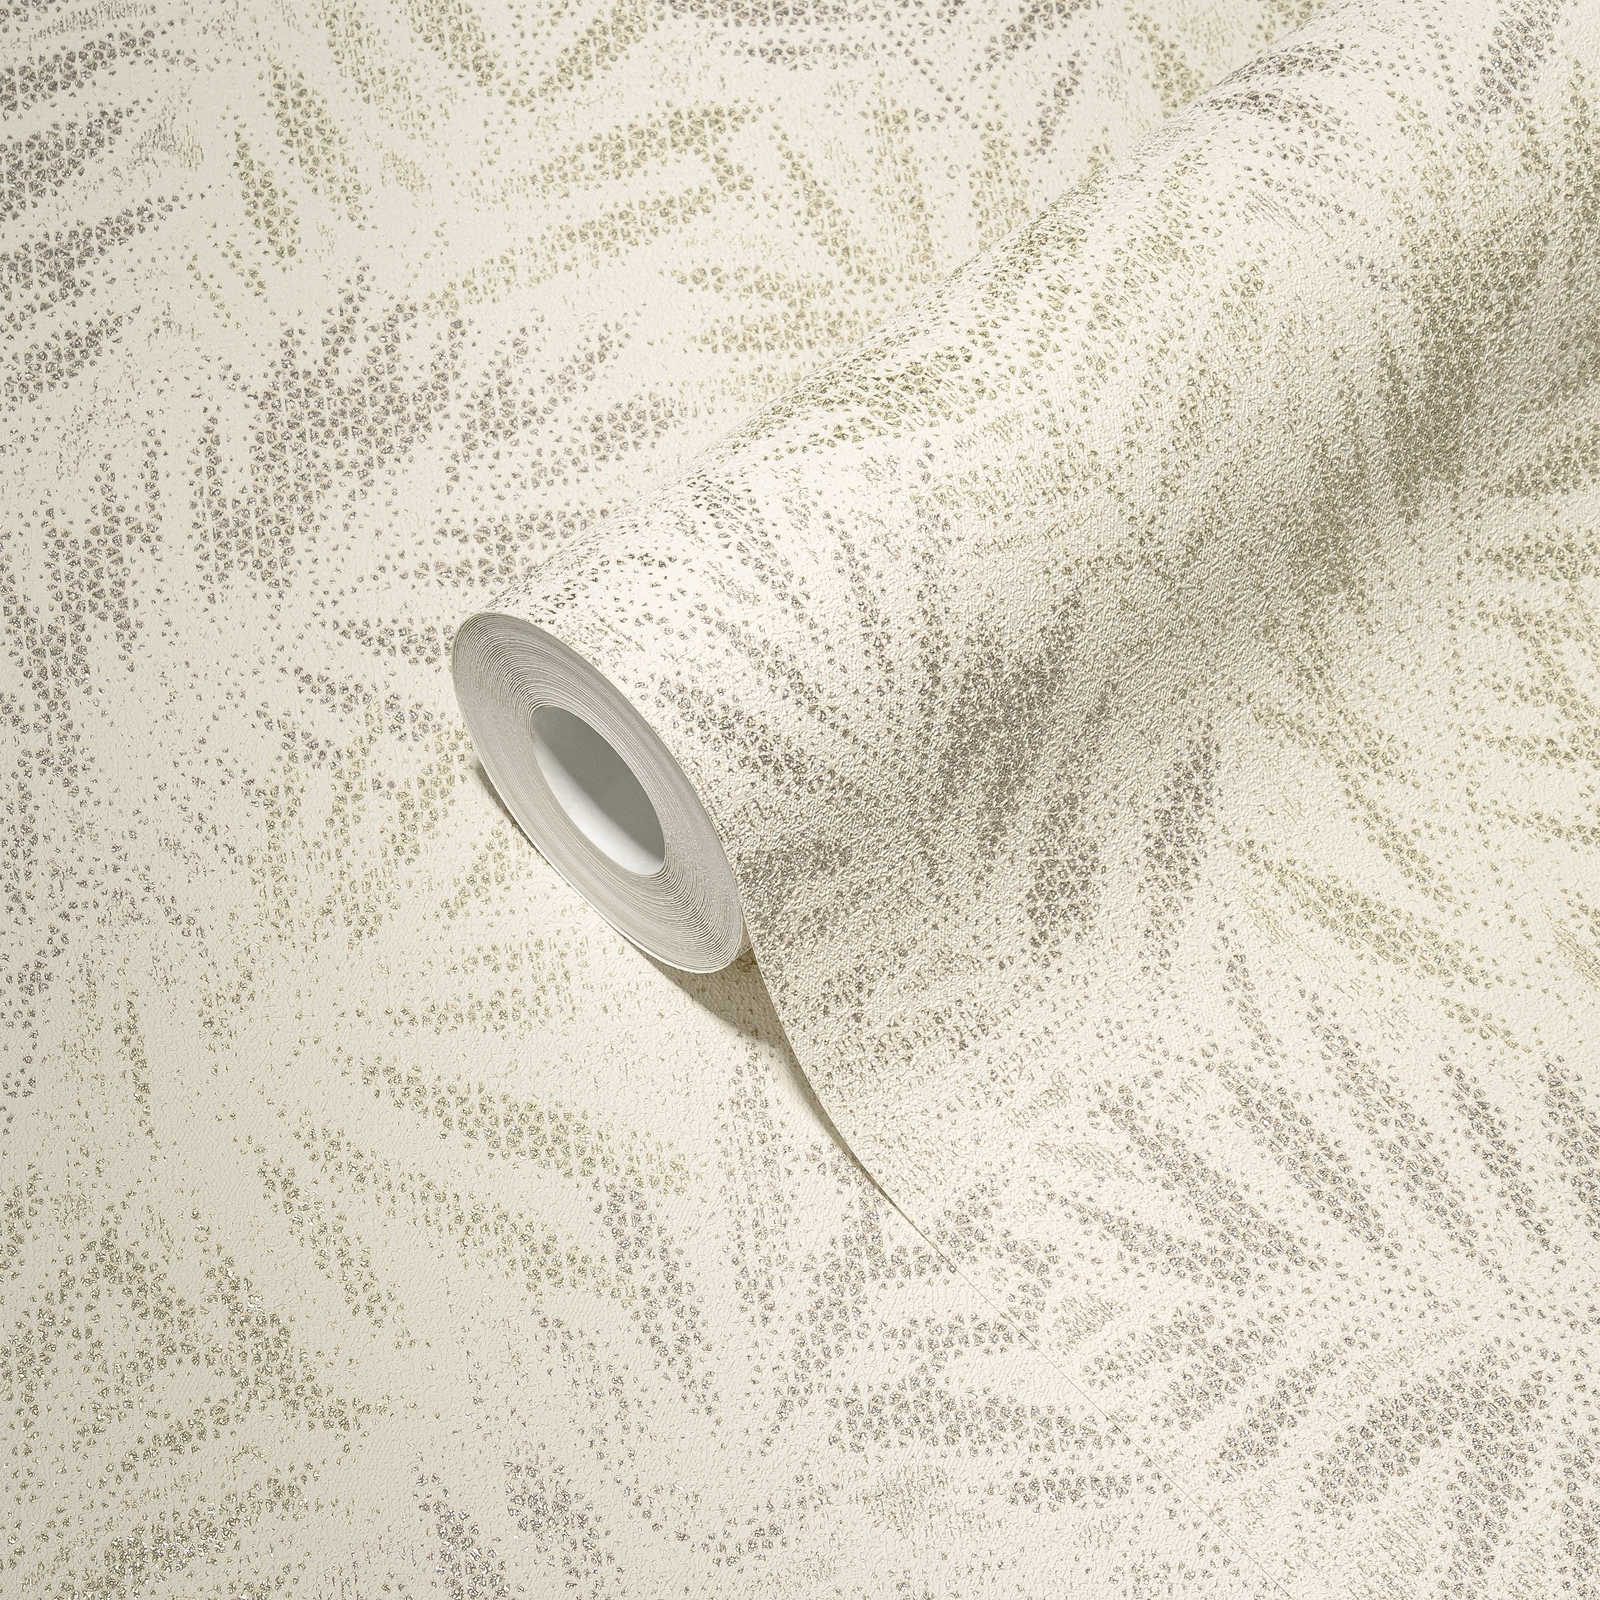             Vliestapete mit glänzenden Blättermuster – Weiß, Grau, Silber
        